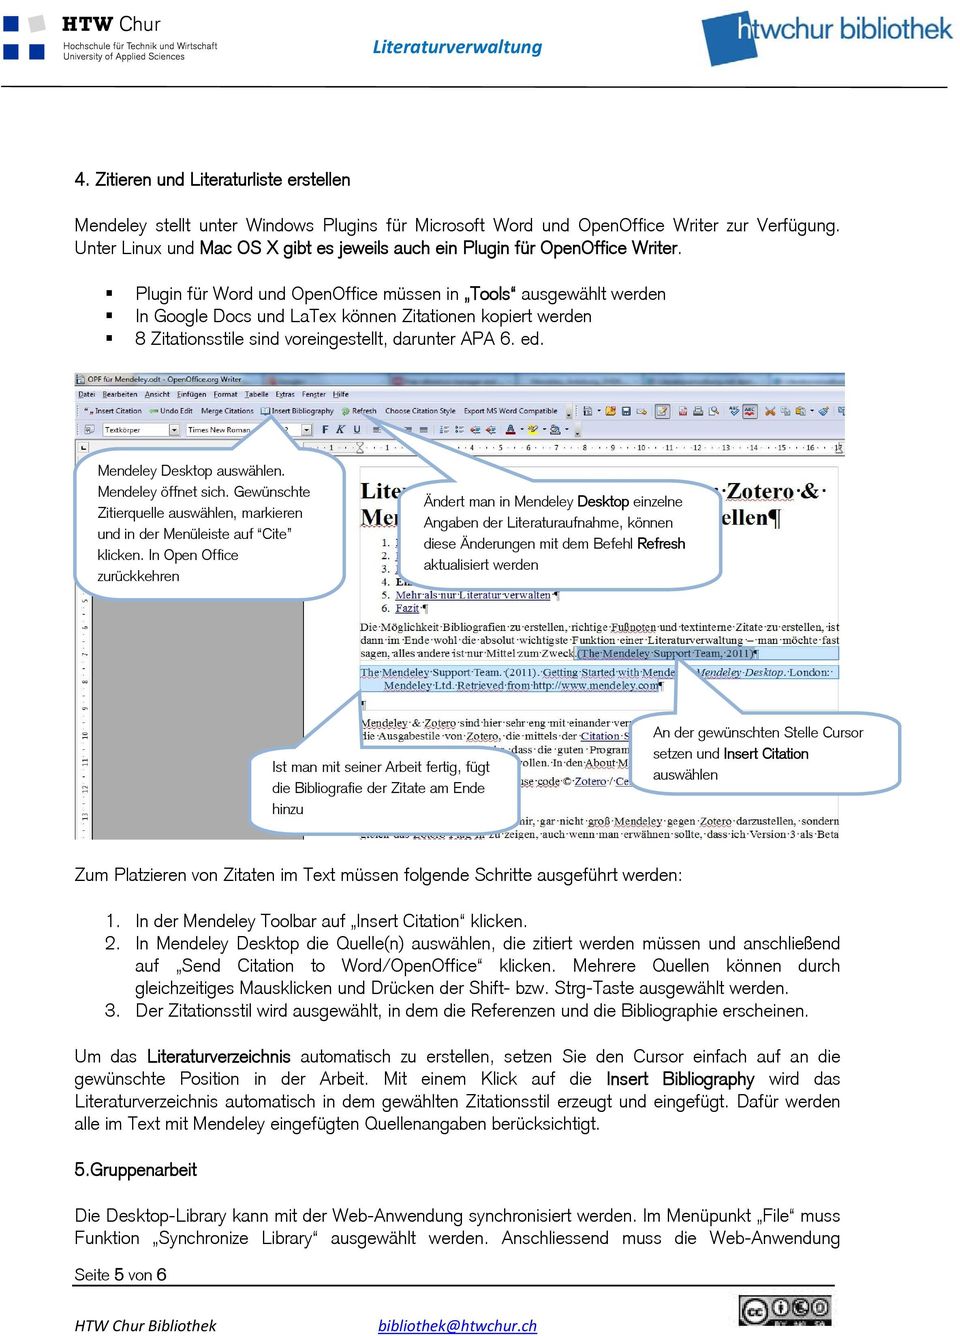 Plugin für Word und OpenOffice müssen in Tools ausgewählt werden In Google Docs und LaTex können Zitationen kopiert werden 8 Zitationsstile sind voreingestellt, darunter APA 6. ed.